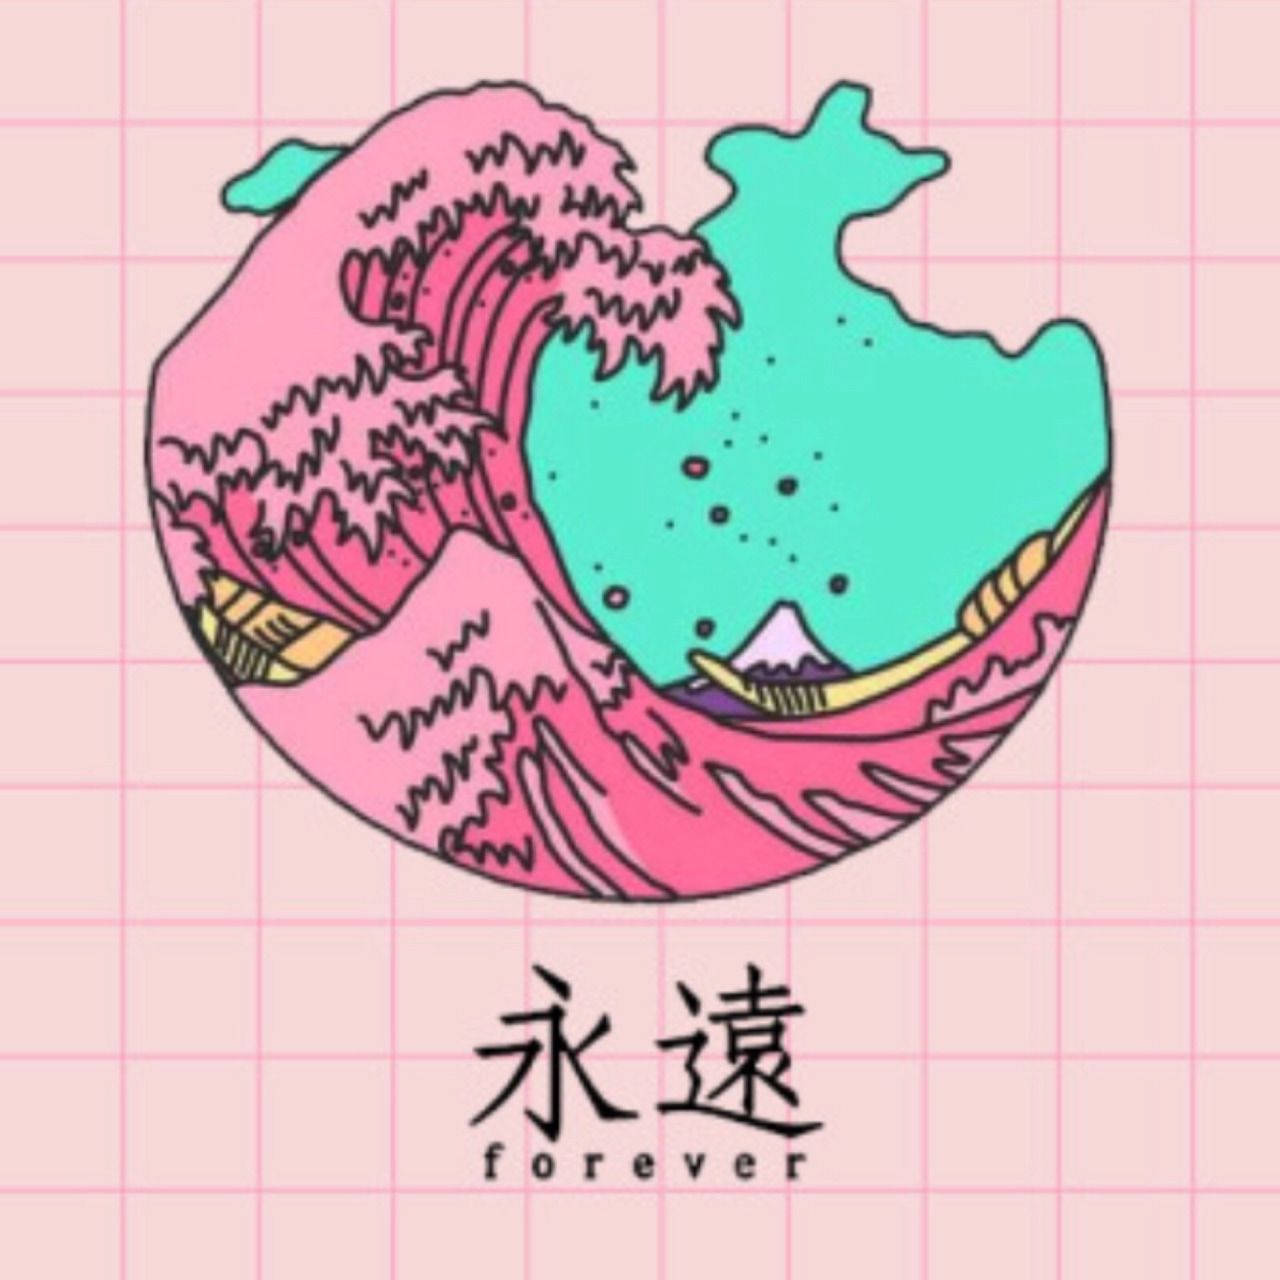 Den store bølge rosa og teal Instagram PFP Wallpaper